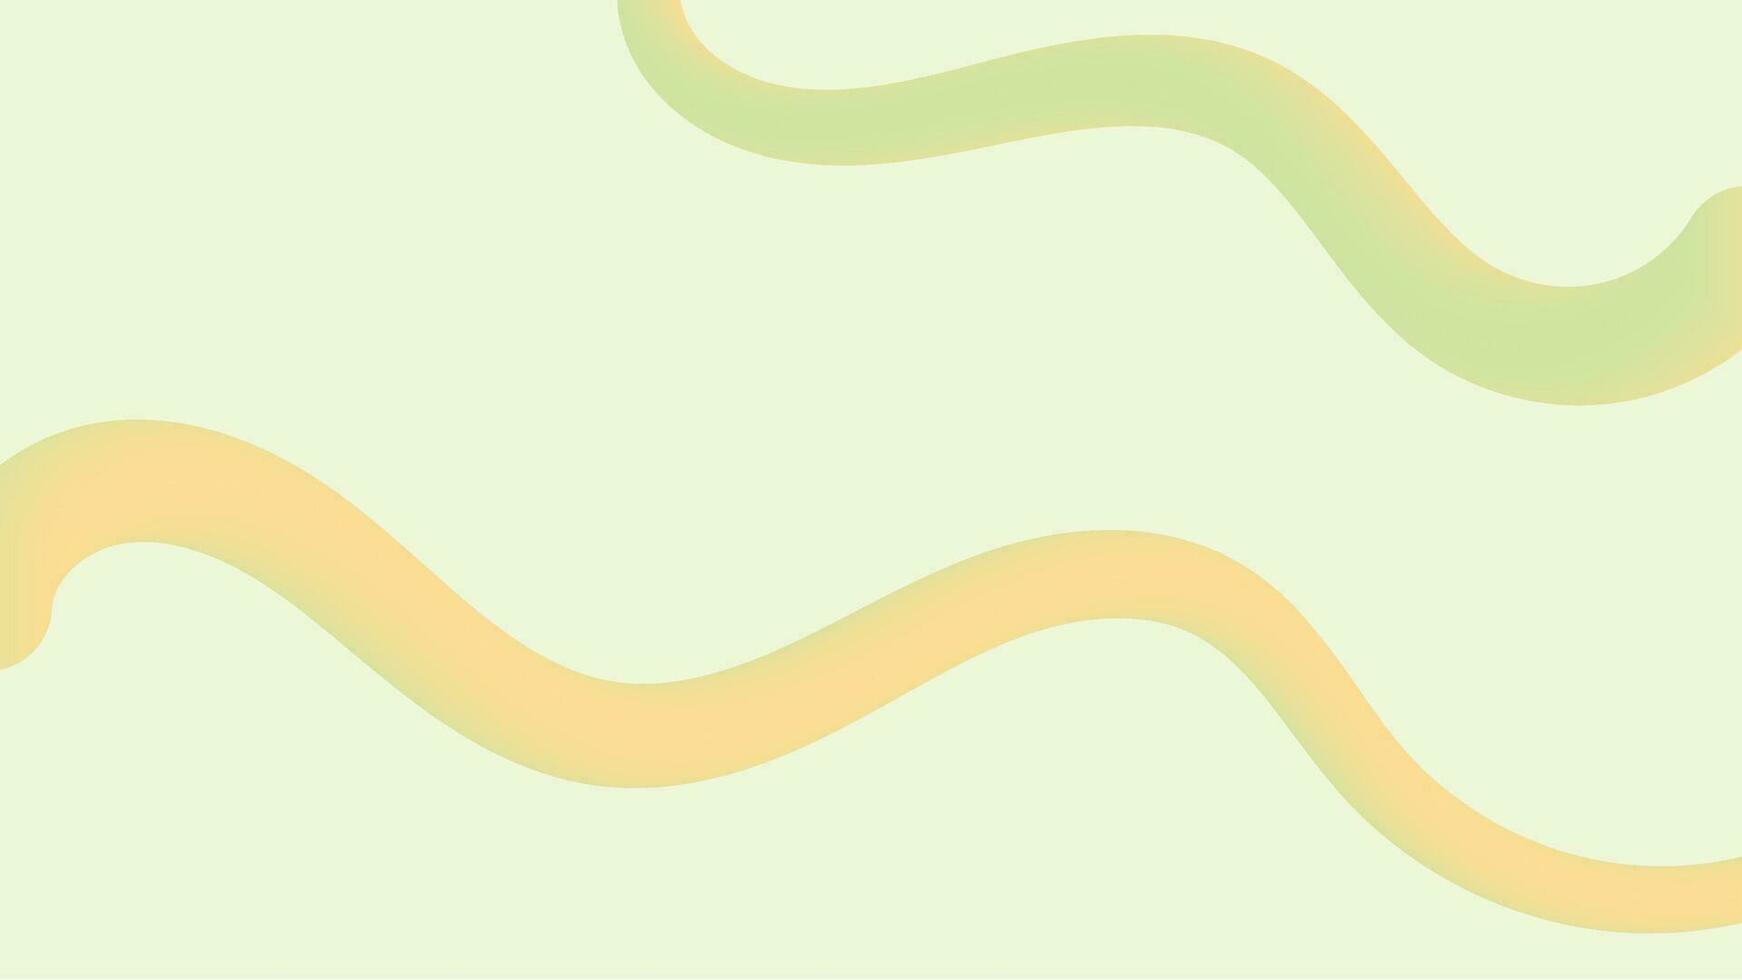 3d groen lijn abstract helling achtergrond vector